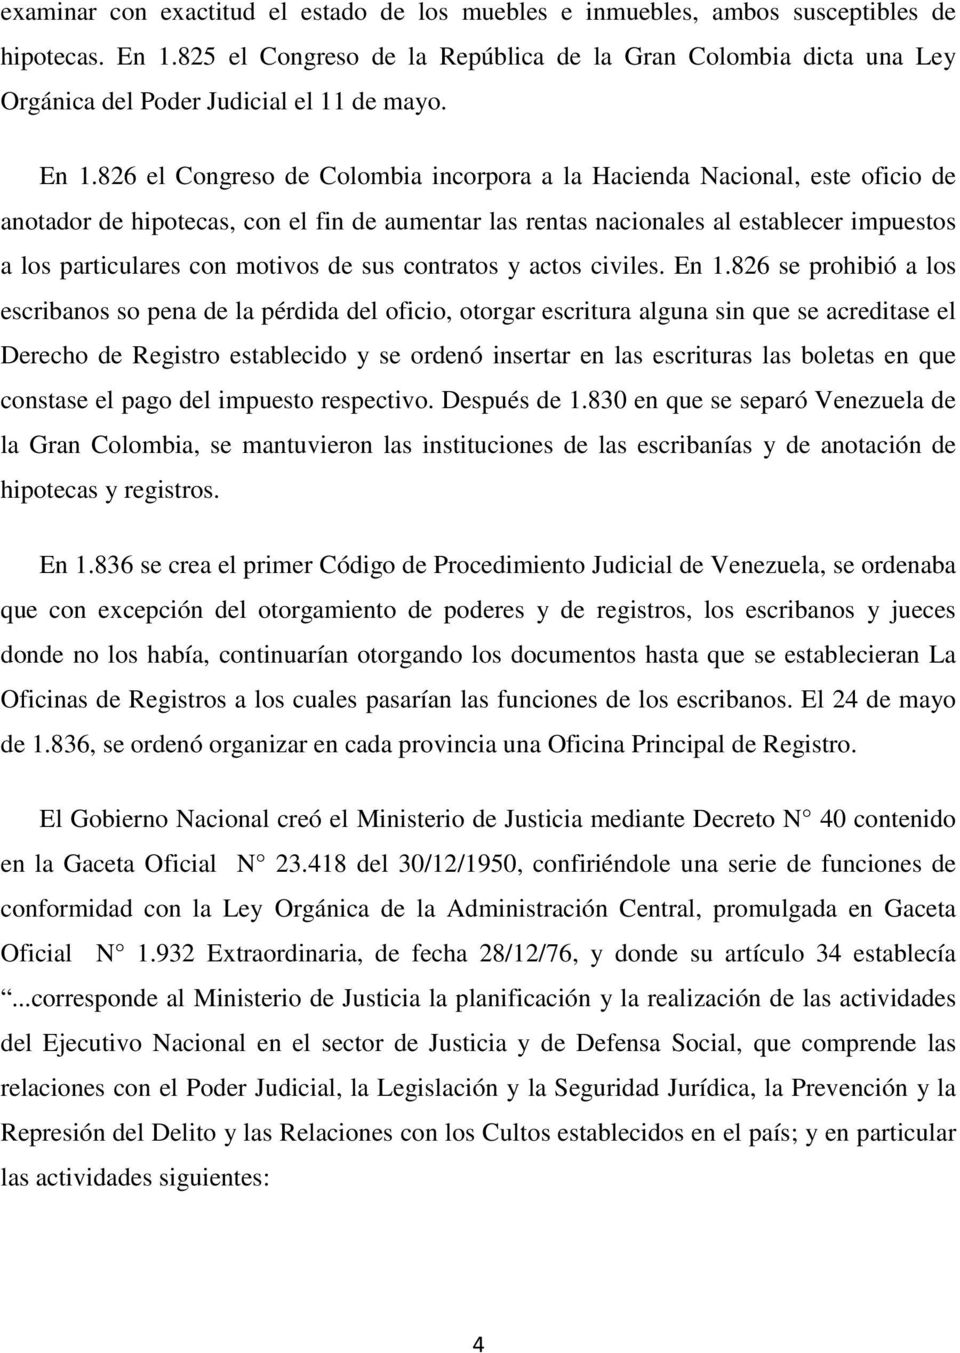 826 el Congreso de Colombia incorpora a la Hacienda Nacional, este oficio de anotador de hipotecas, con el fin de aumentar las rentas nacionales al establecer impuestos a los particulares con motivos